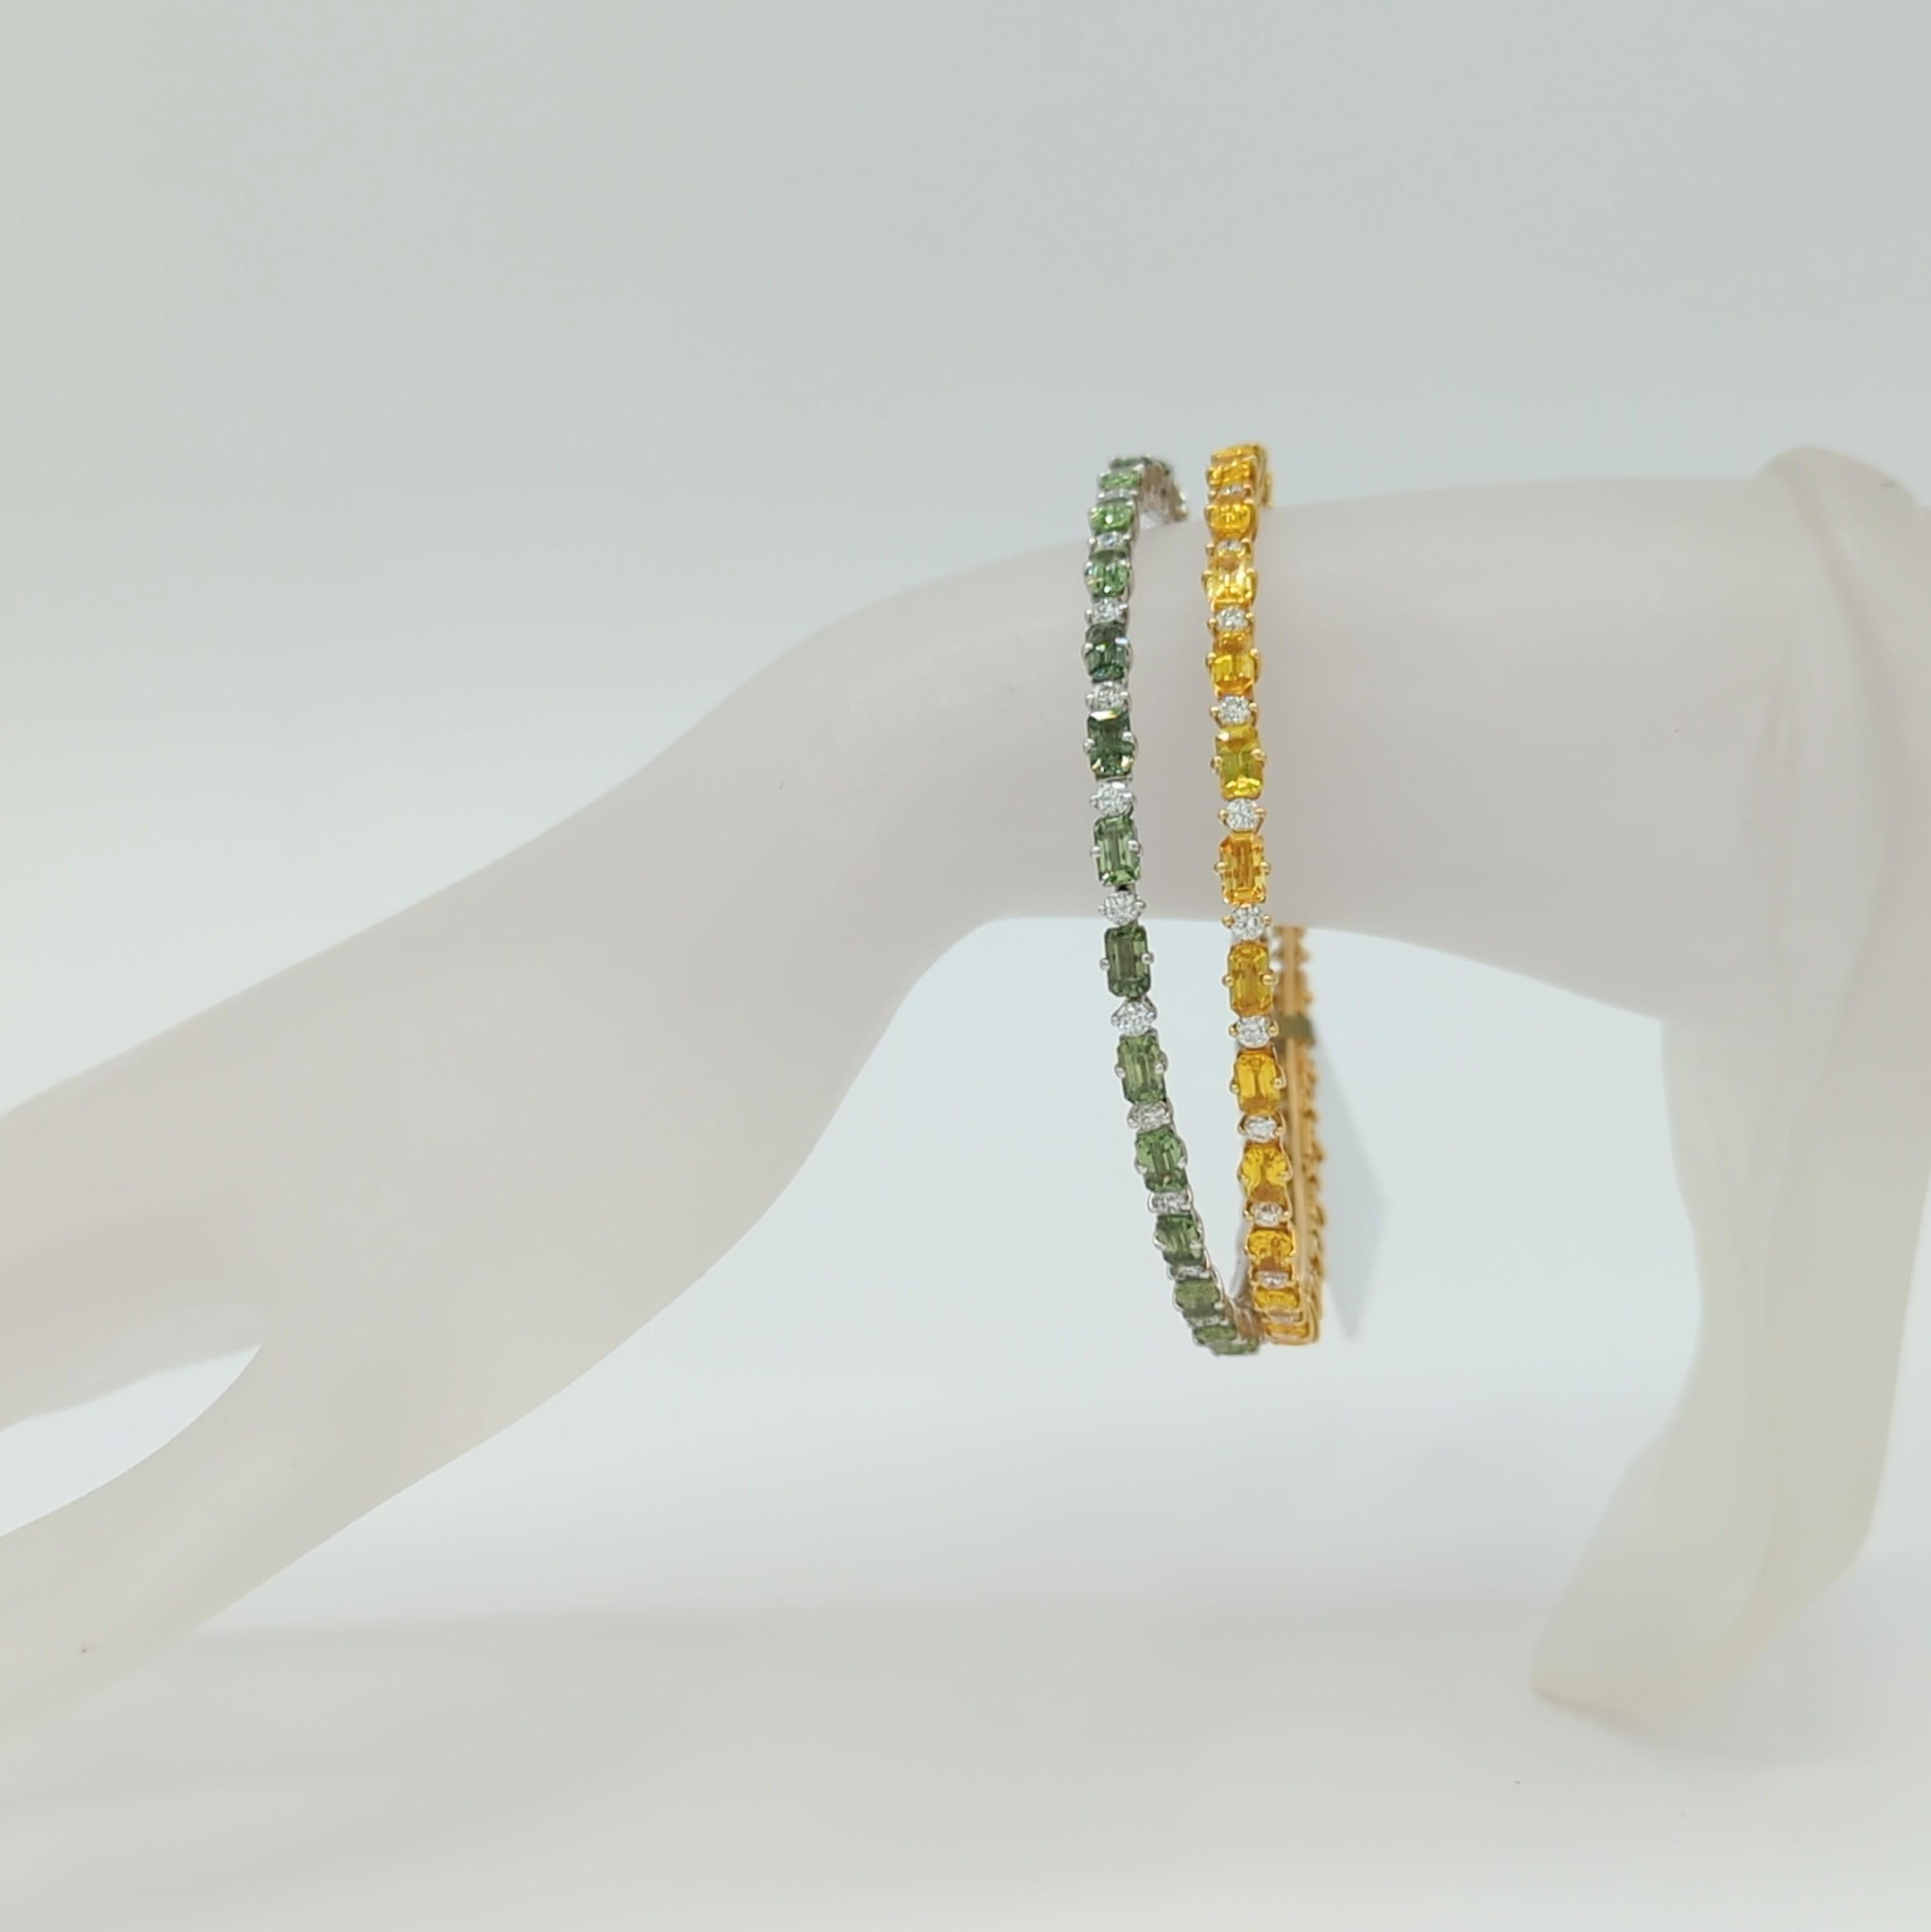 Magnifique saphir vert et jaune ZYDO en taille émeraude avec des diamants blancs ronds de bonne qualité.  Fabriqué à la main en or jaune et blanc 18 carats.